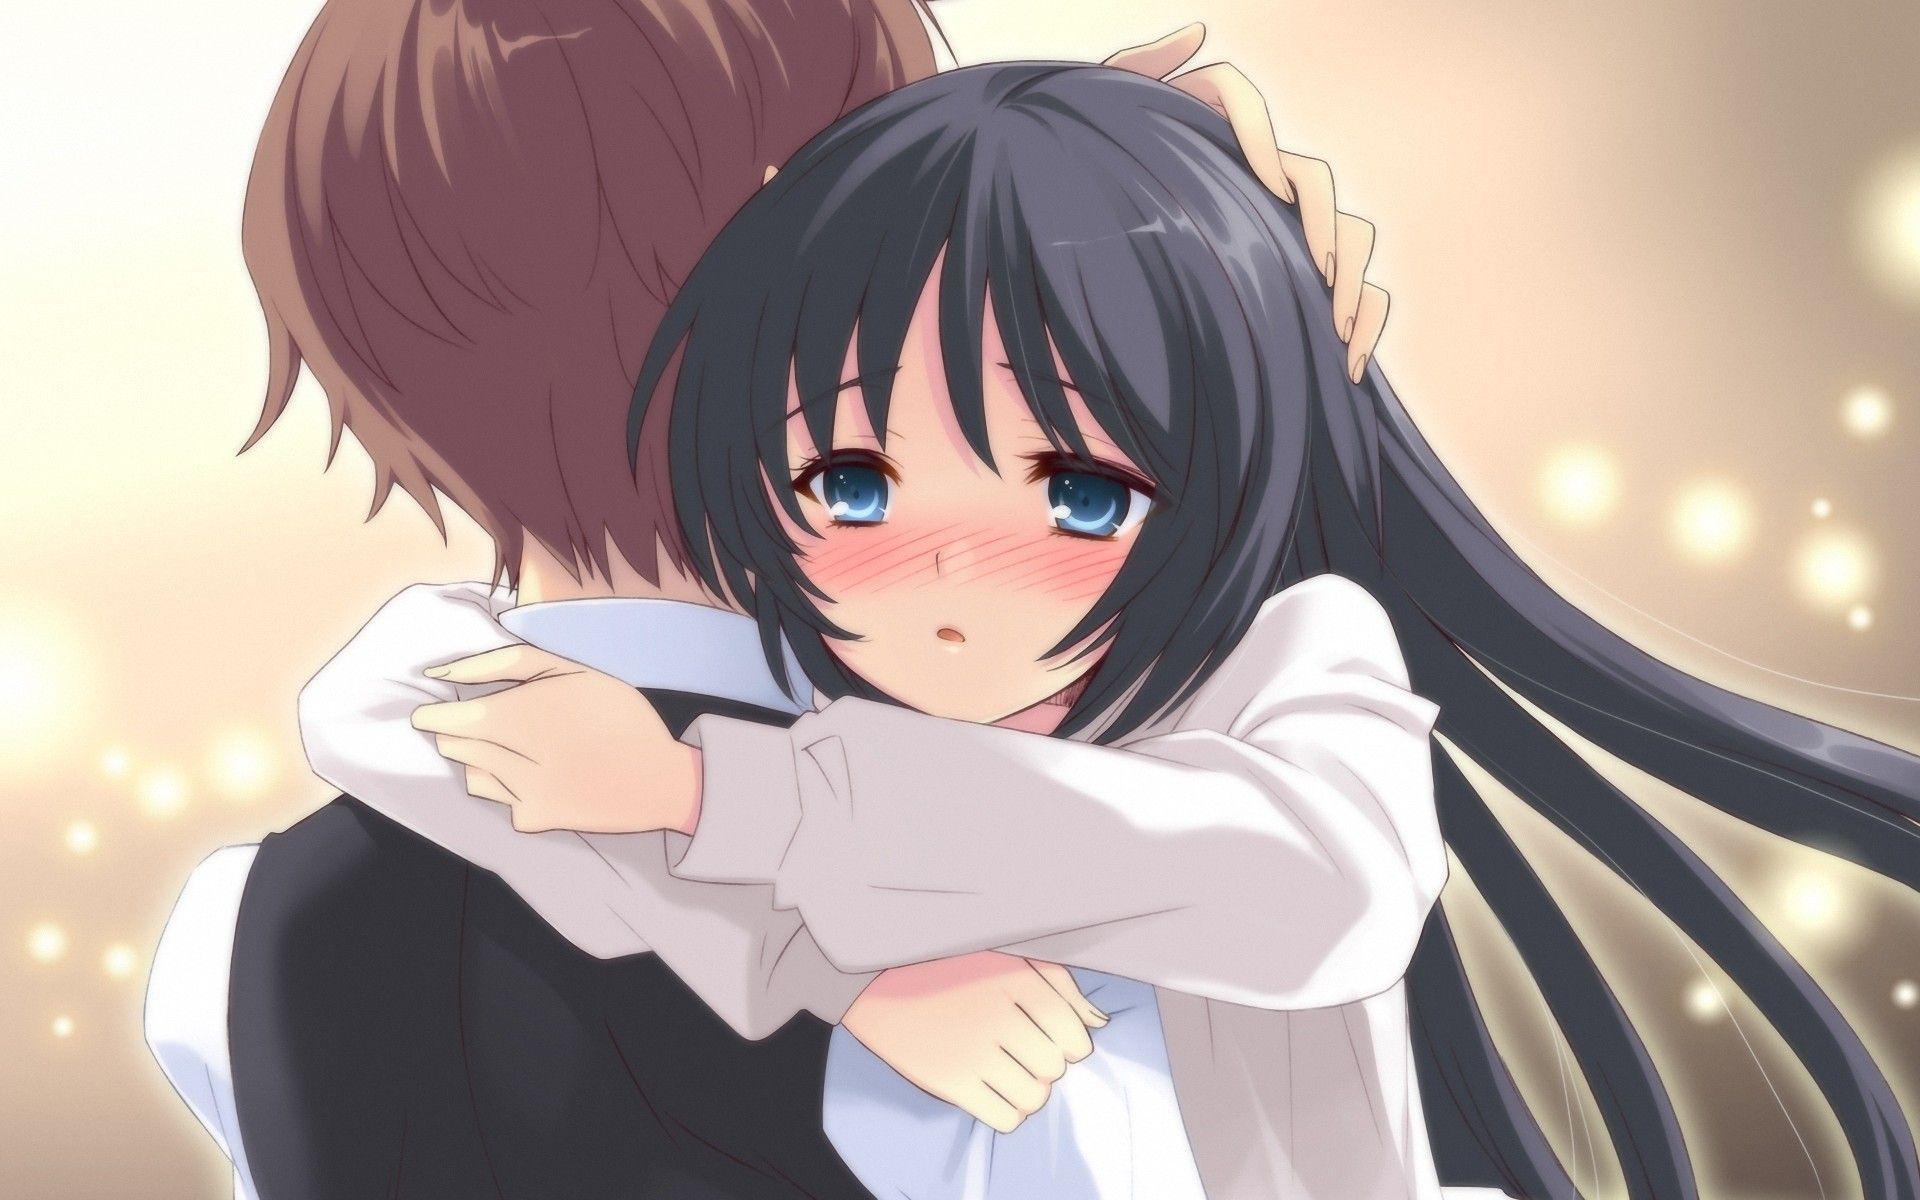 Anime Hug Wallpapers - Top Free Anime Hug Backgrounds - WallpaperAccess